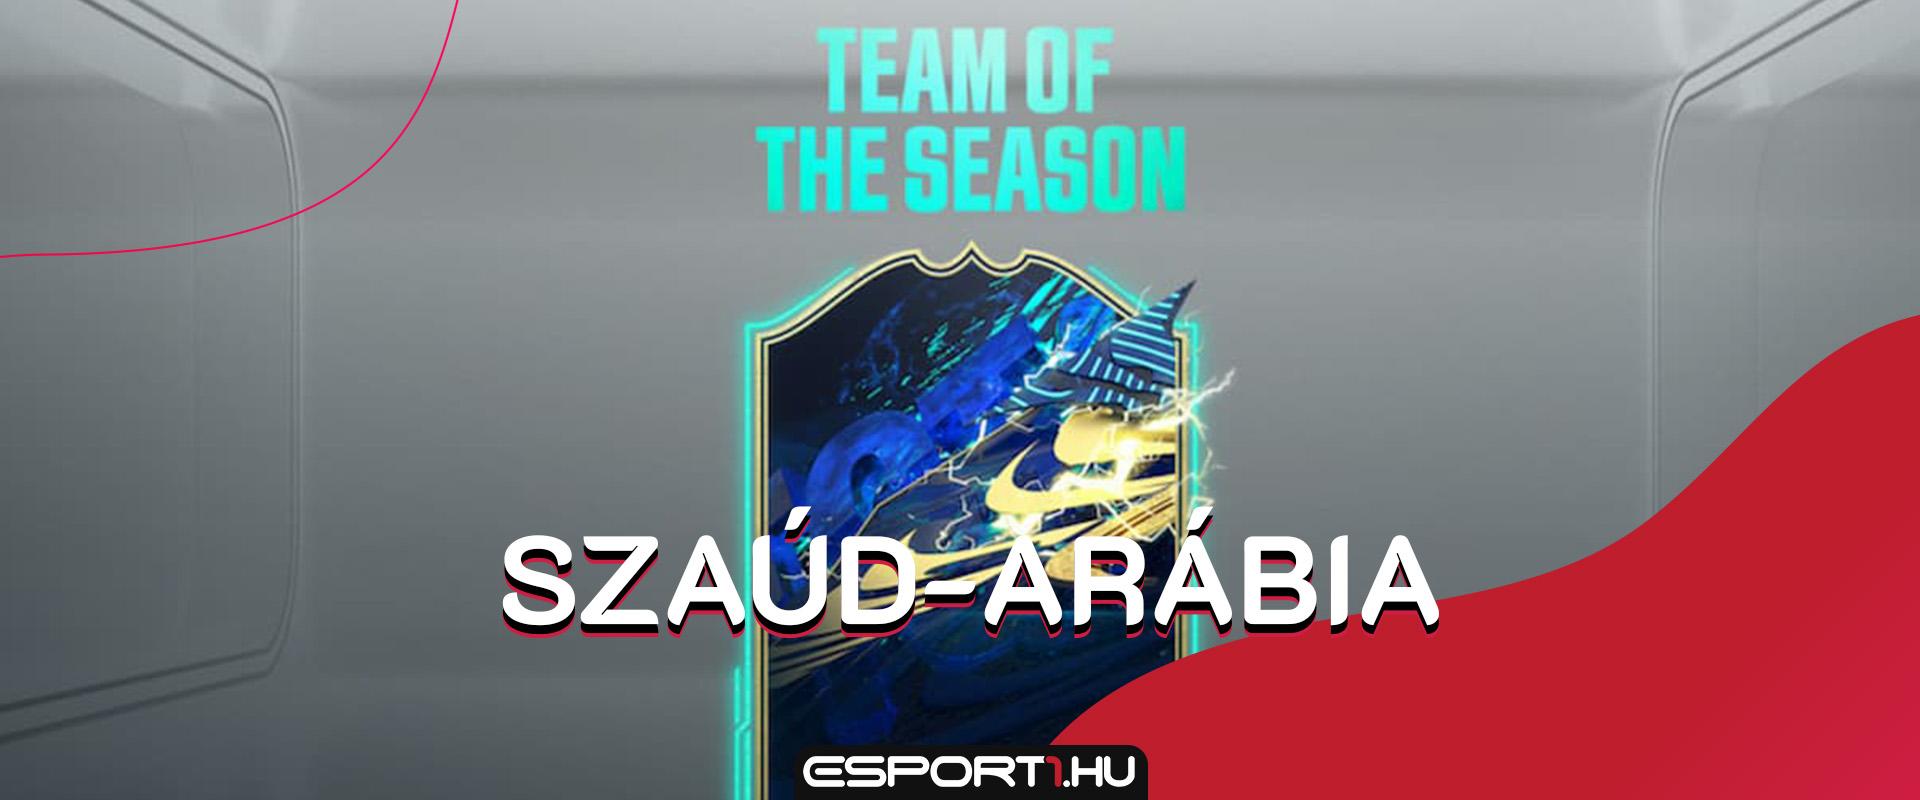 Így néz ki a FIFA 21 szaúdi Team of the Season csapat névsora